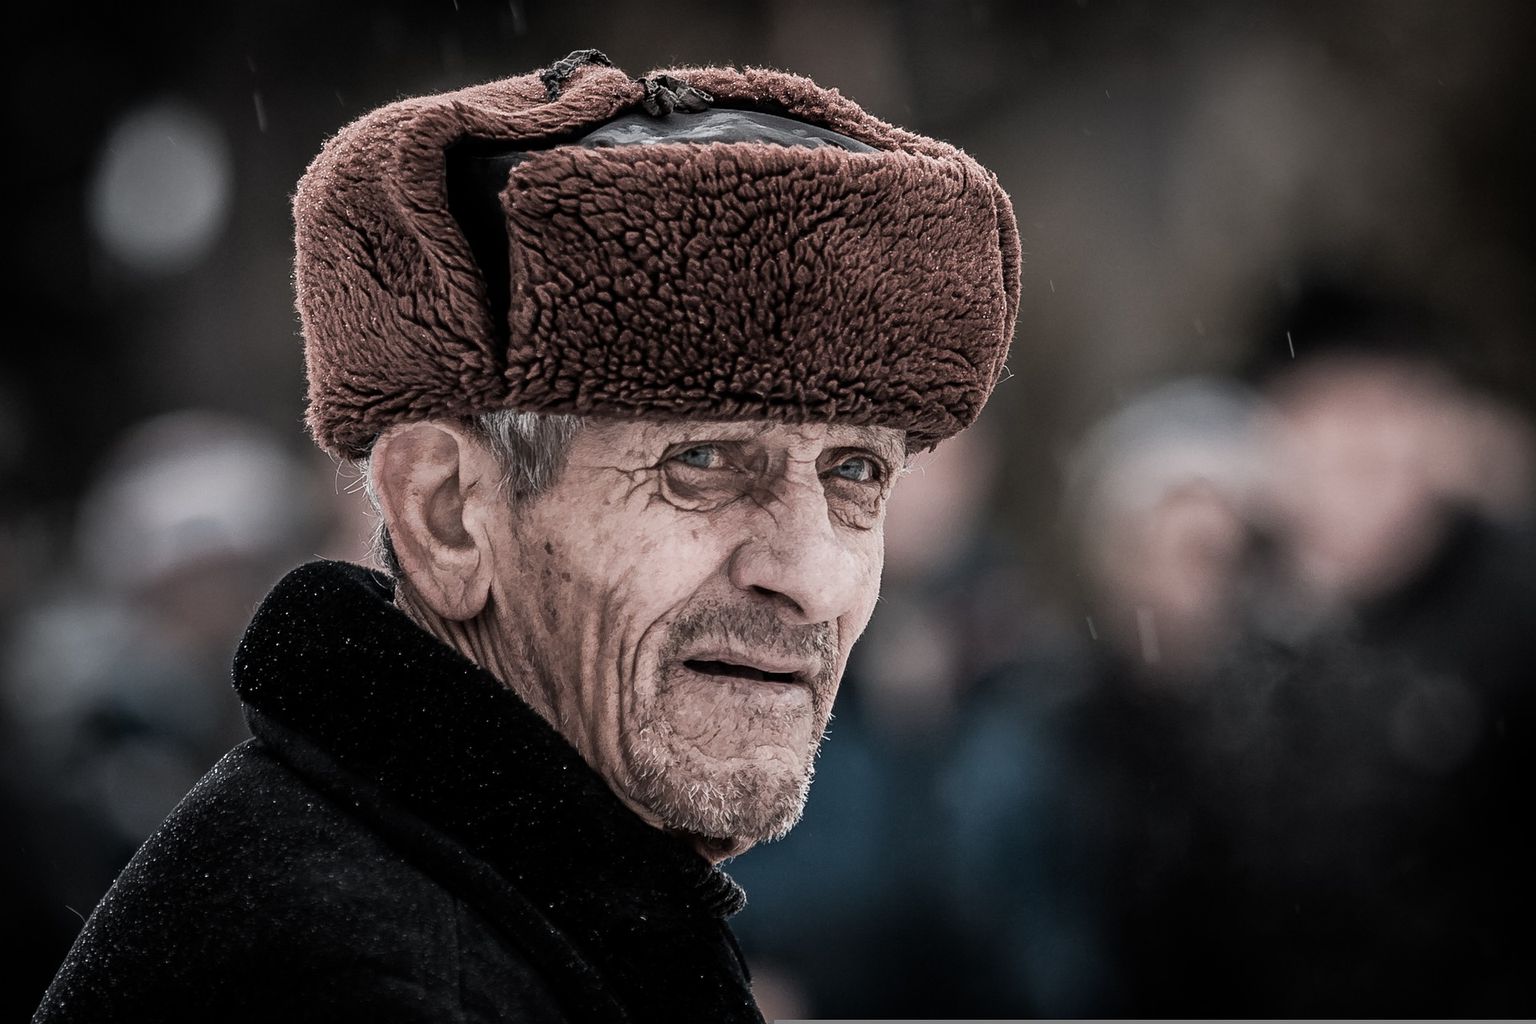 Зимняя шапка. Иллюстративное фото